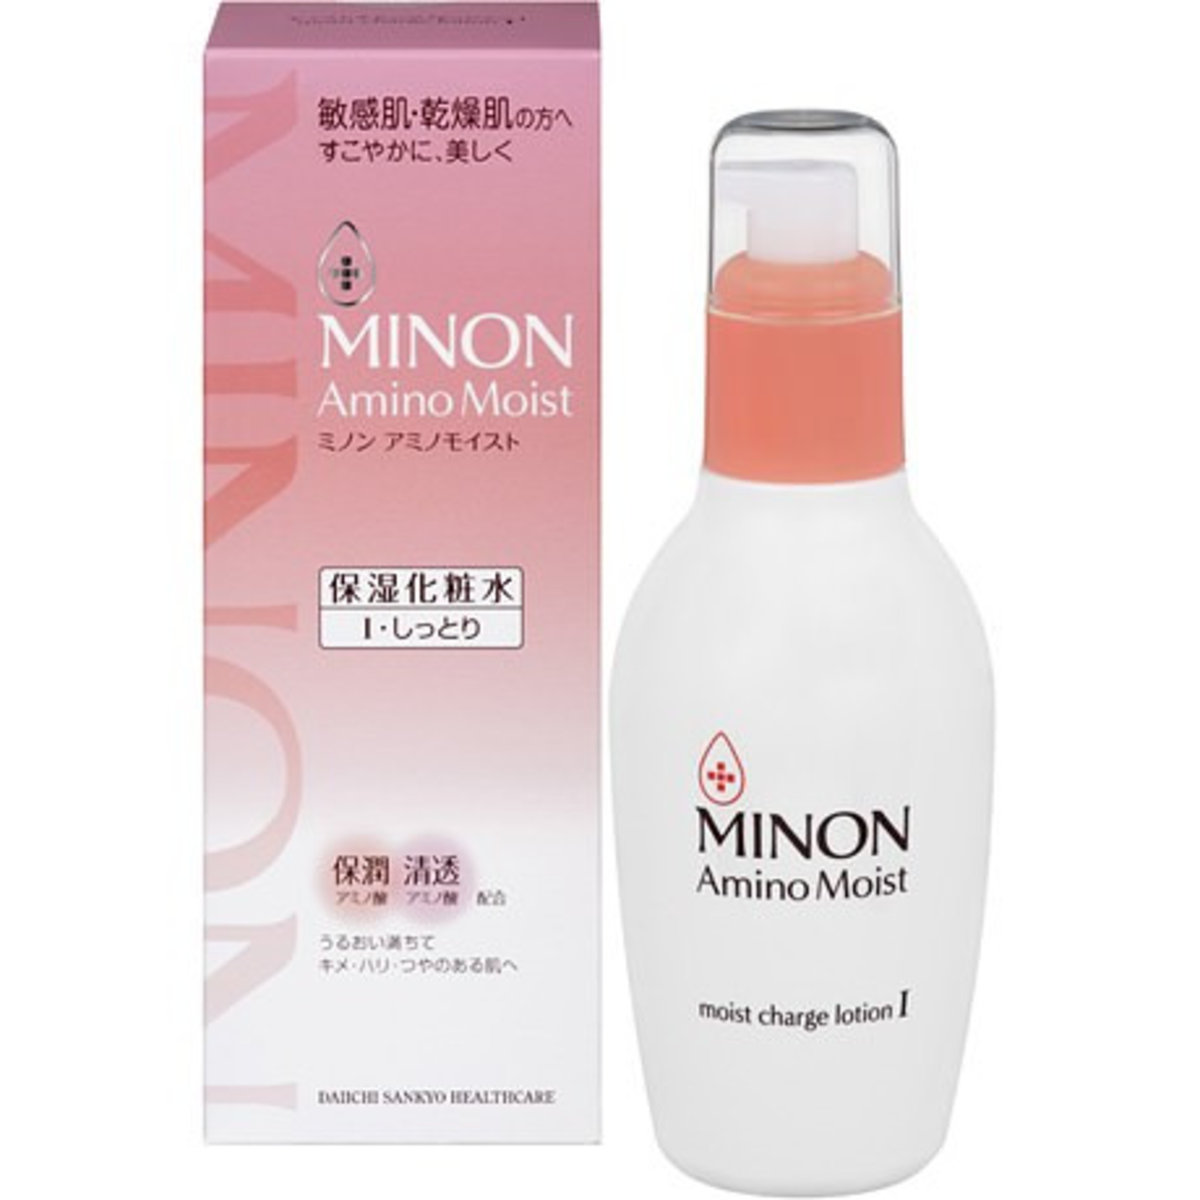 日本MINON - 氨基酸保湿化妆水1号 (清爽型) 150ml